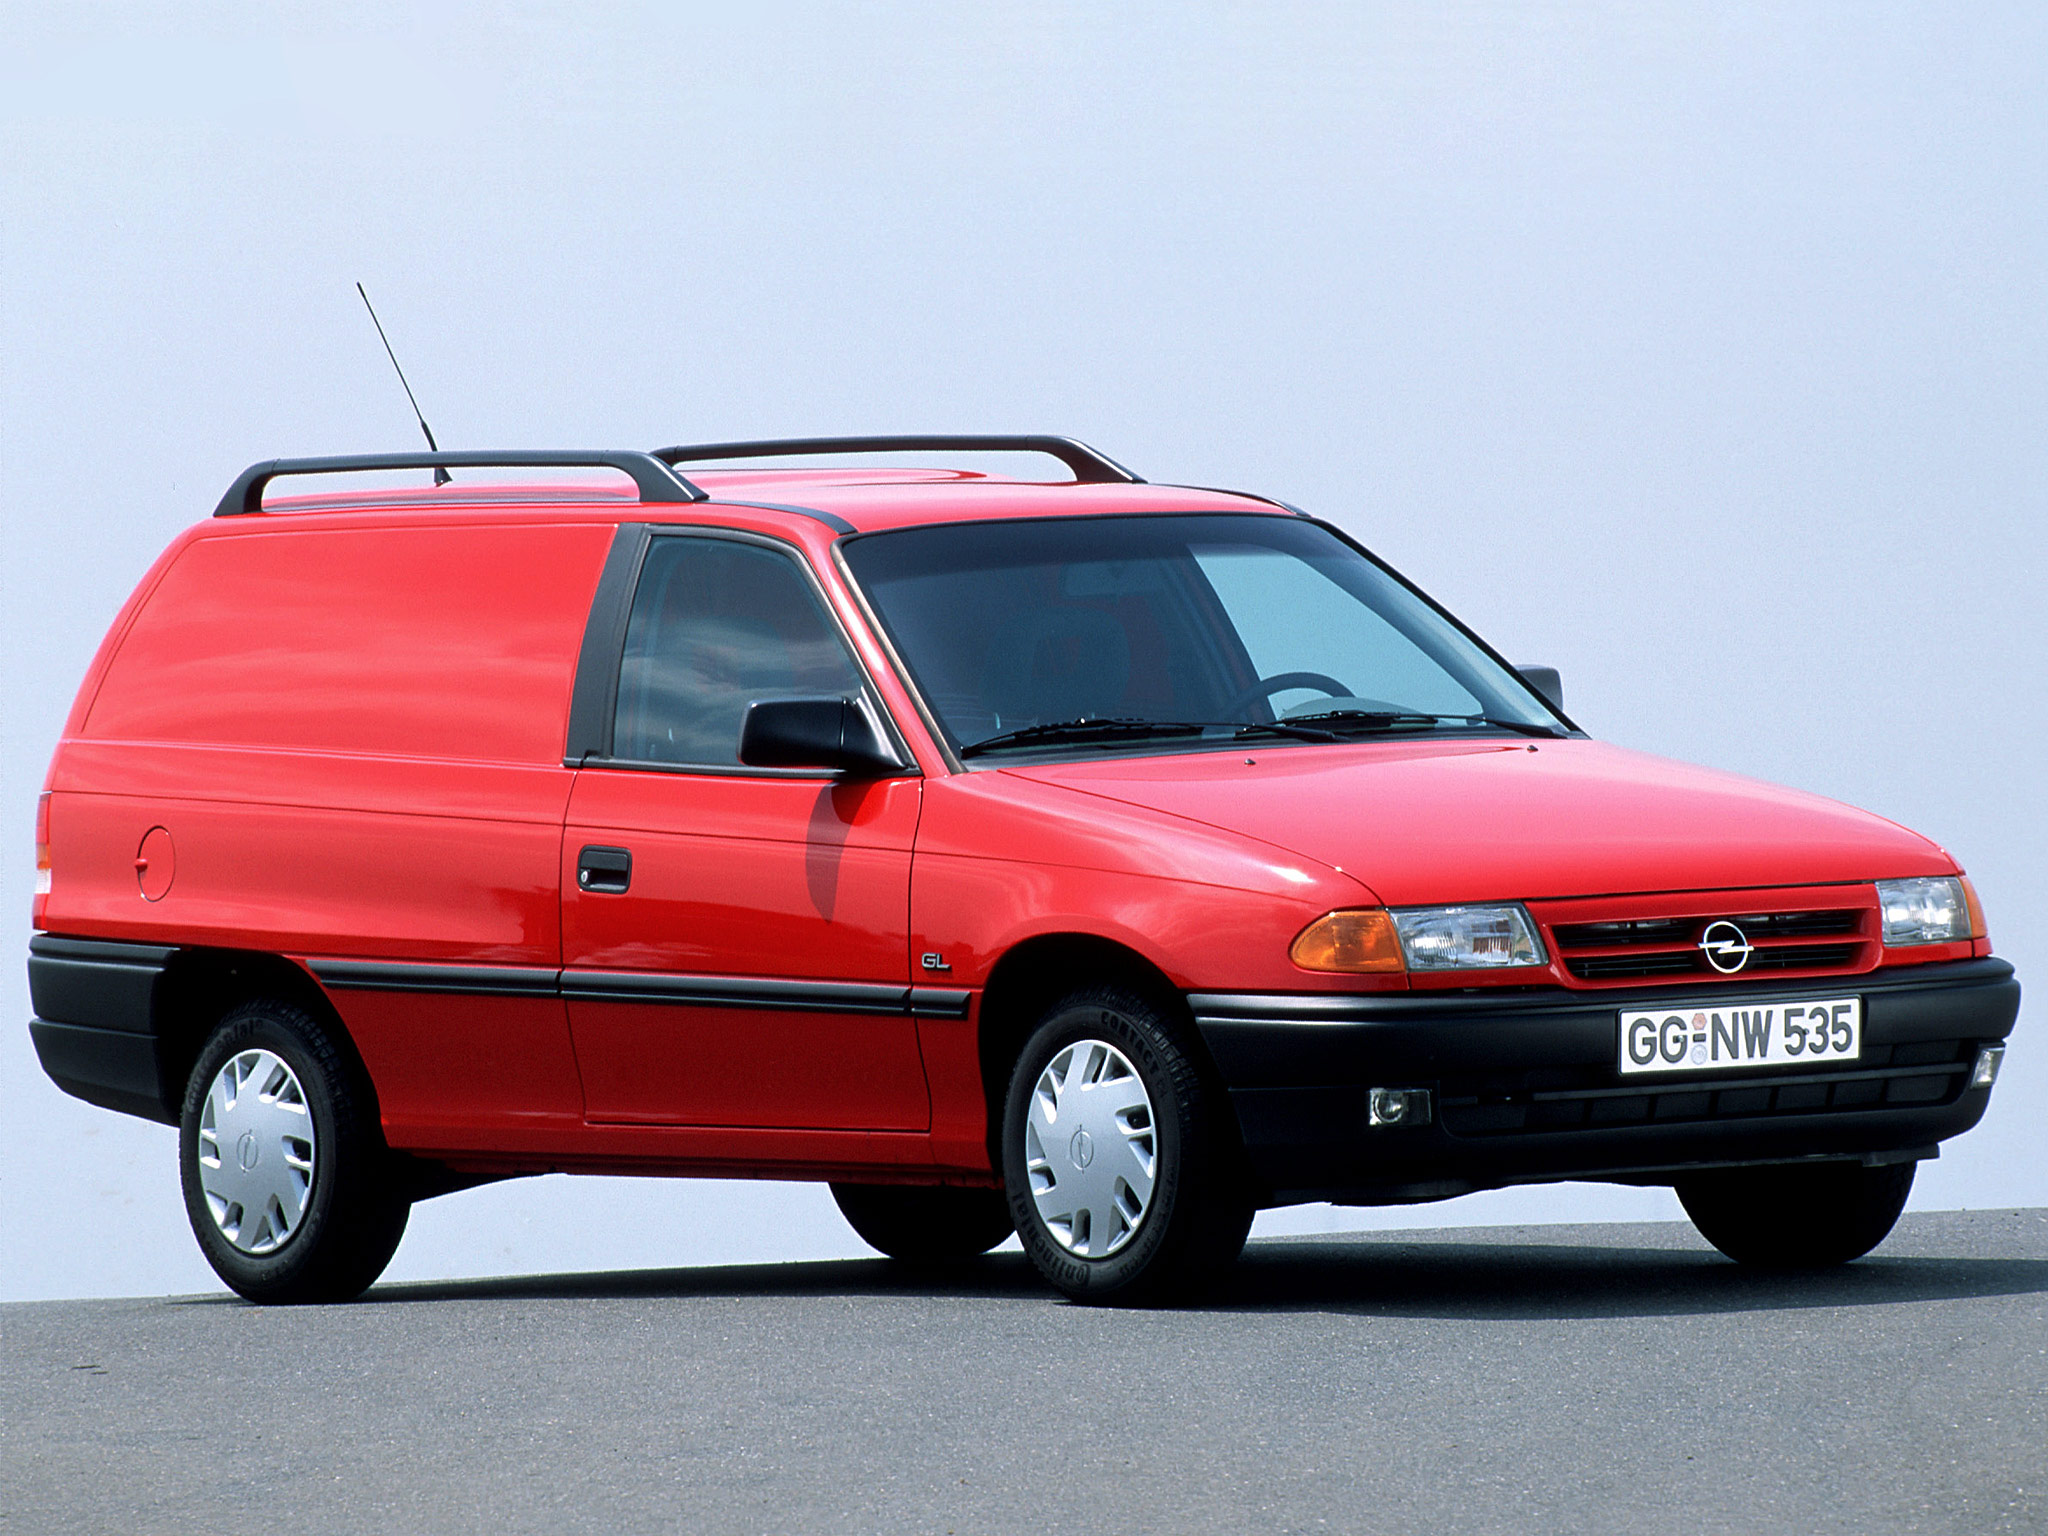 Opel Astra Van (F) '1991â€“94. Ð¥Ð°Ñ€Ð°ÐºÑ‚ÐµÑ€Ð¸ÑÑ‚Ð¸ÐºÐ¸ Ð¸Ð·Ð¾Ð±Ñ€Ð°Ð¶ÐµÐ½Ð¸Ñ: